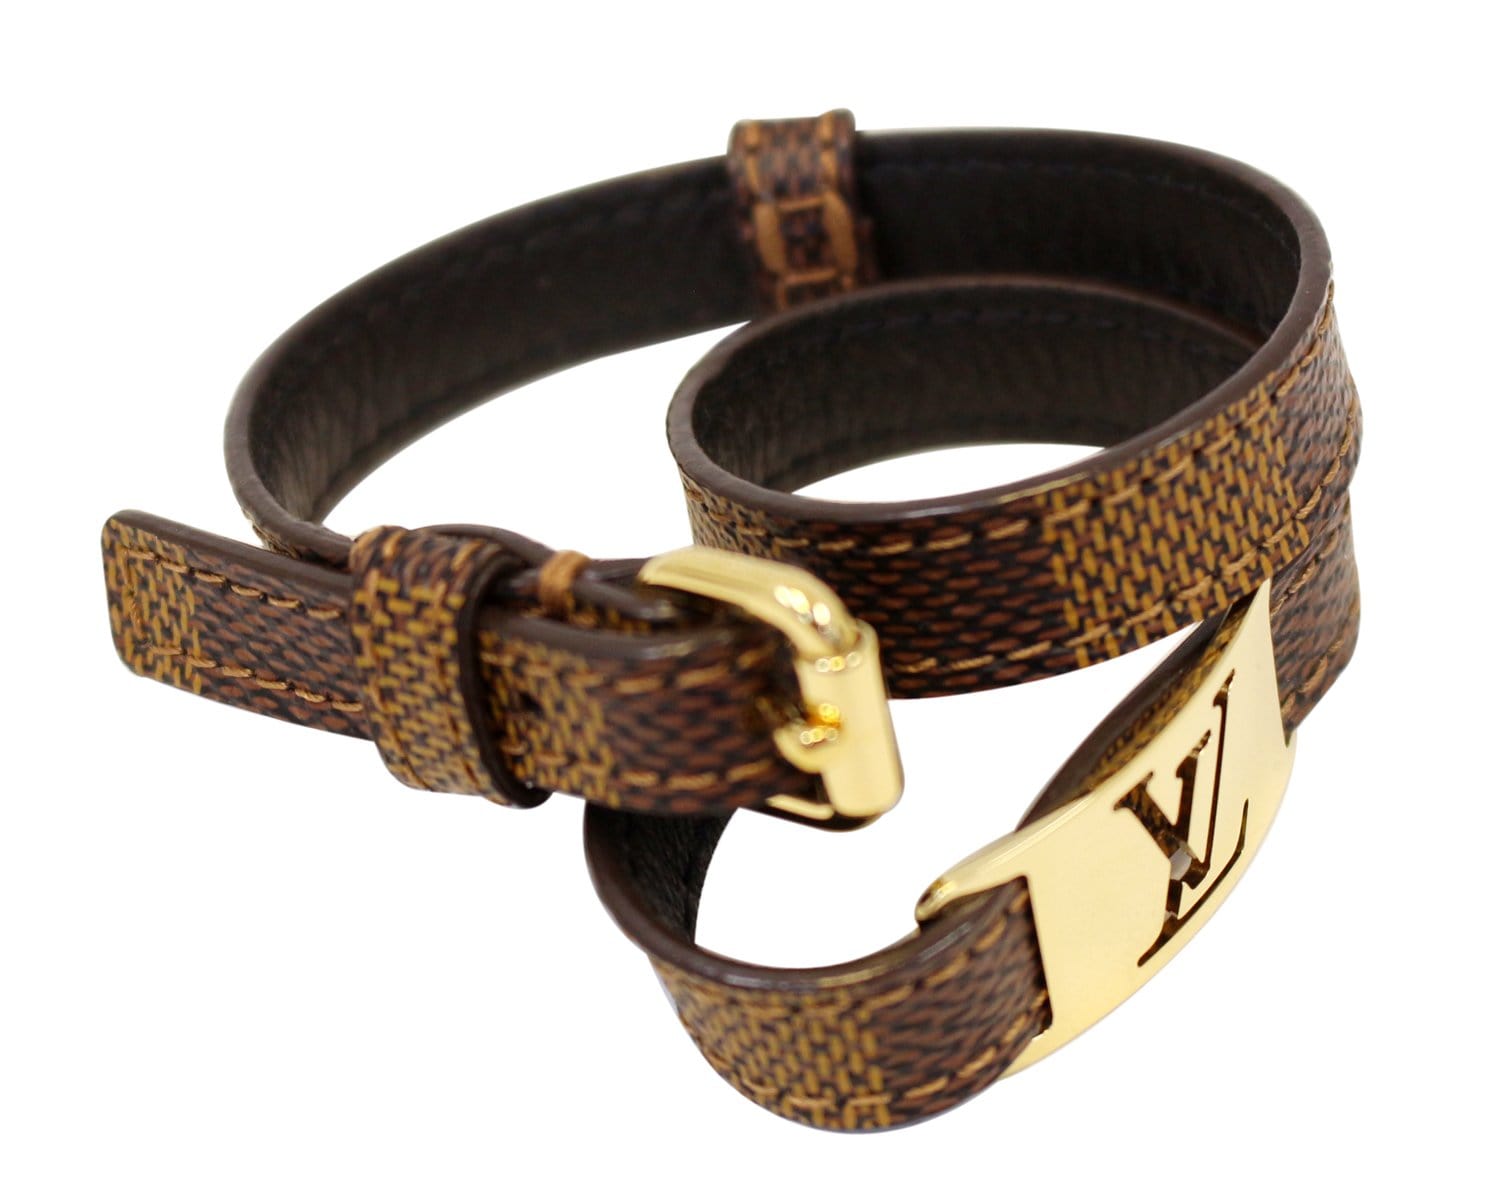 Shop Louis Vuitton Men's Bracelet